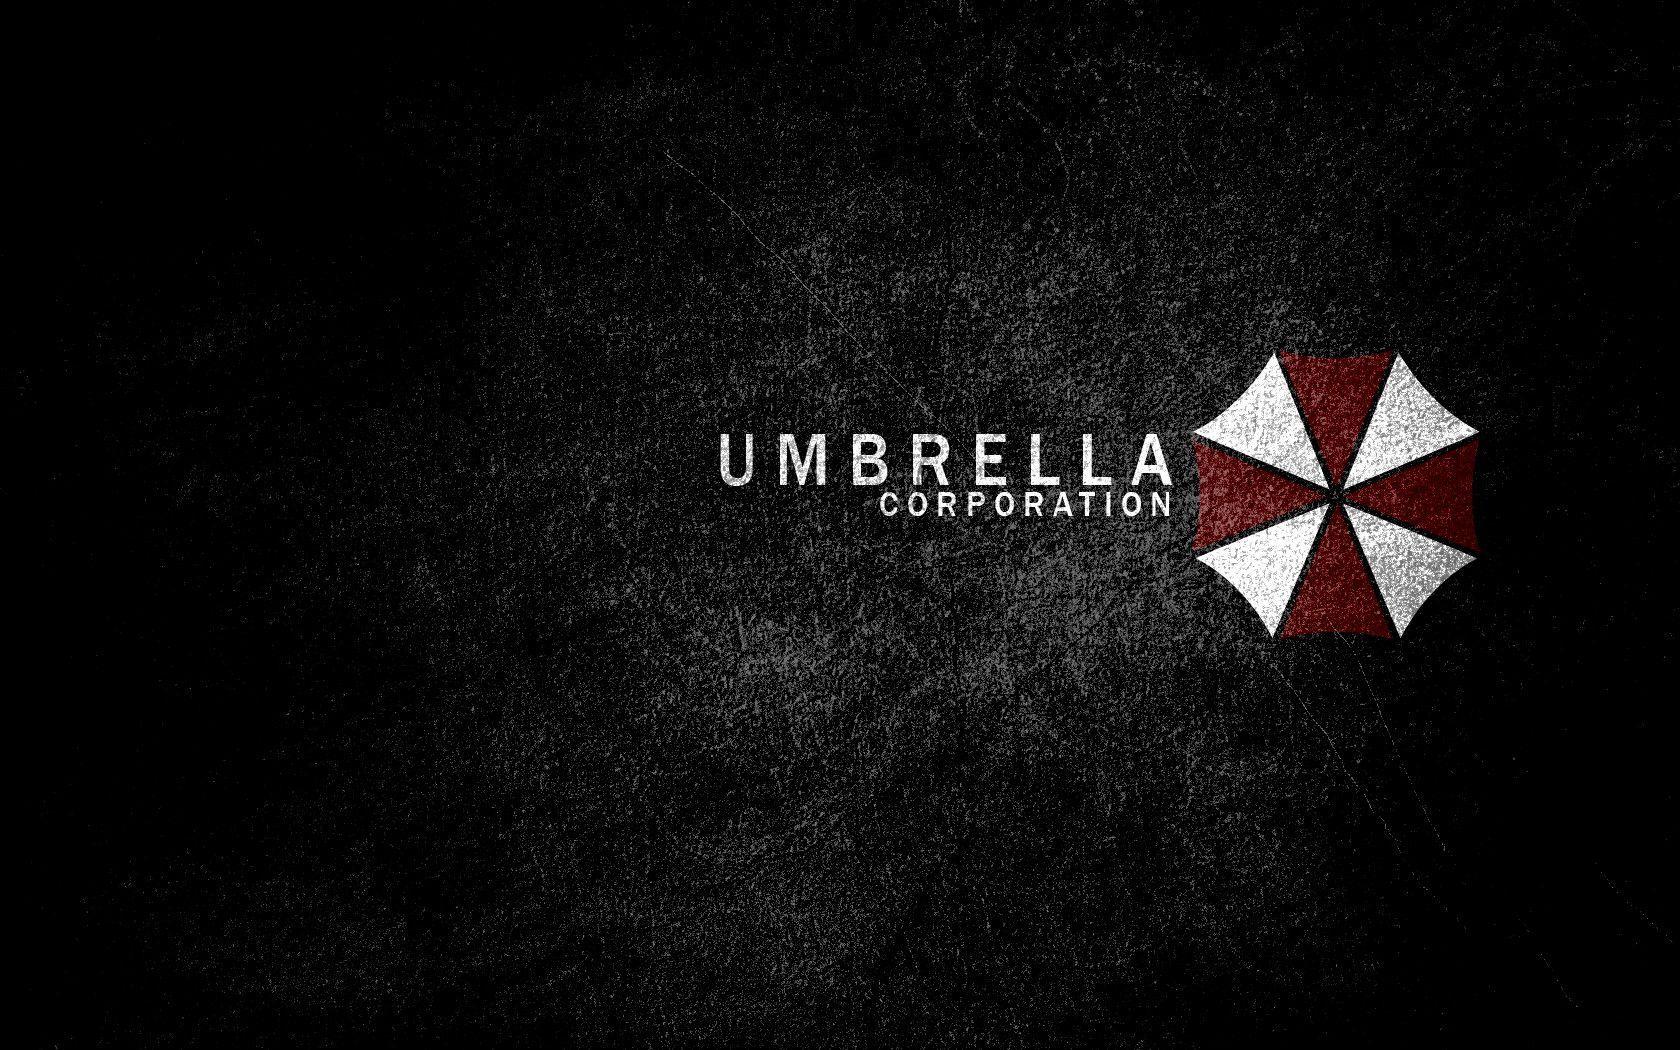 Umbrella Corporation Logo Wallpaper Free Umbrella